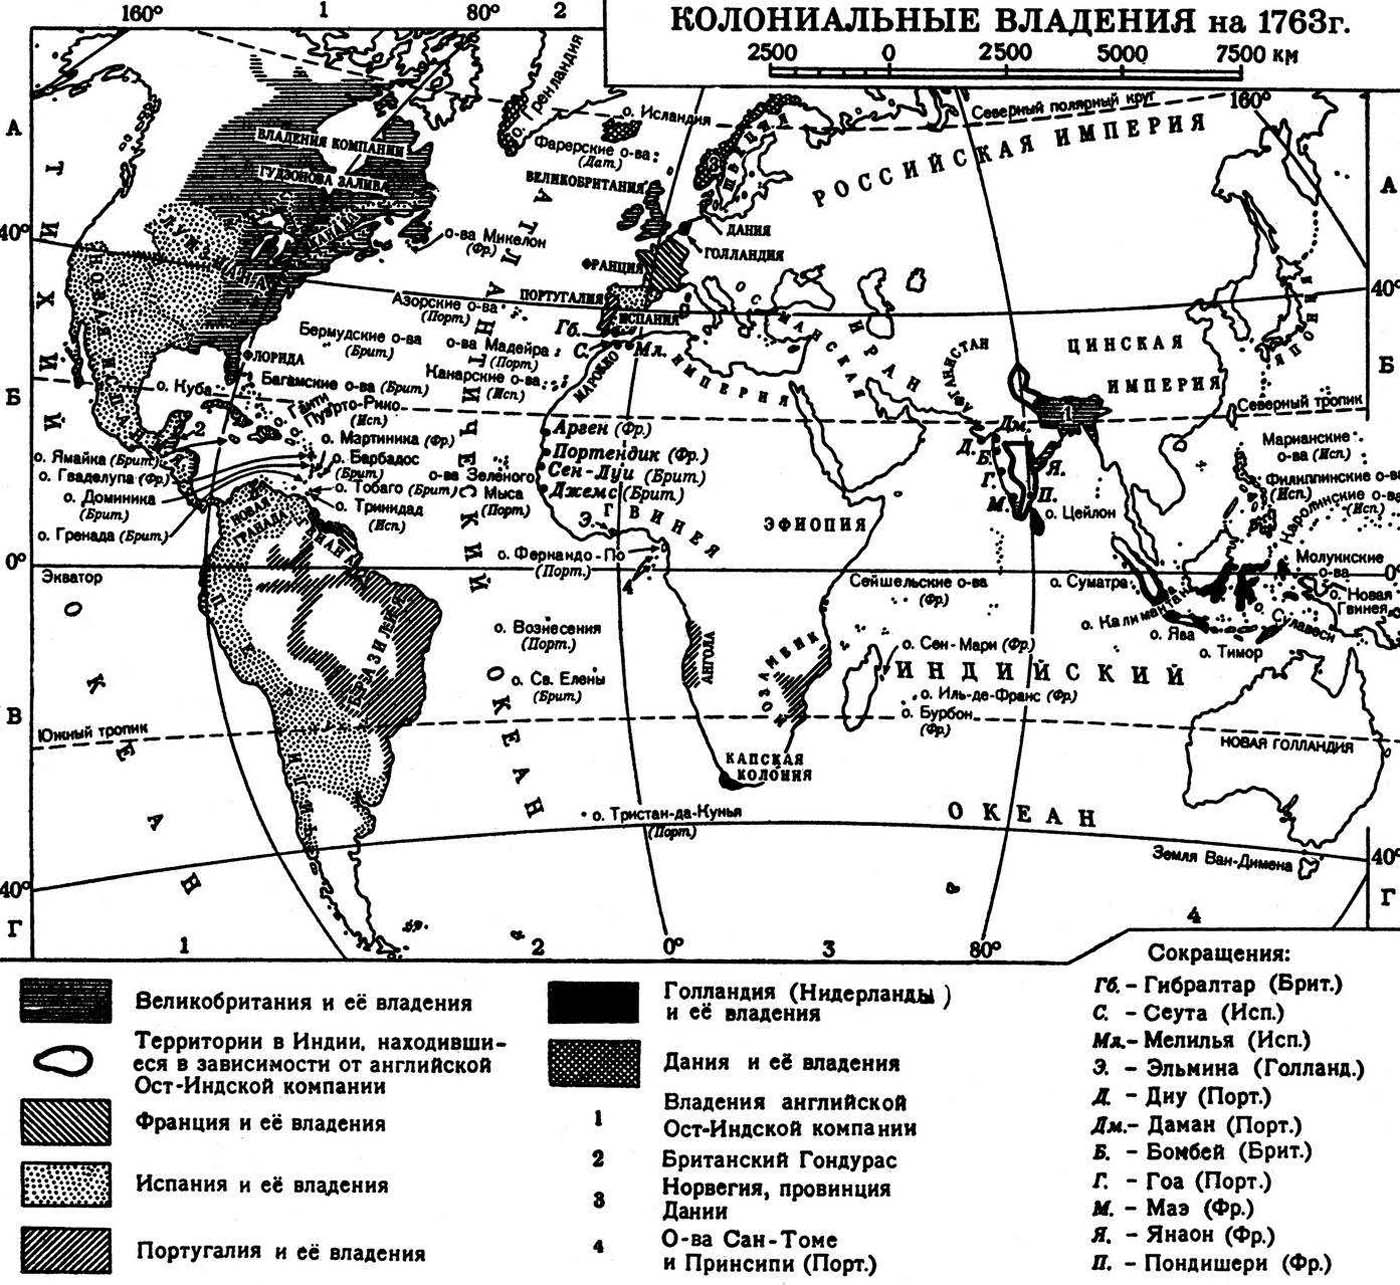 Колониальная система 20 века. Колониальные империи 19 века. Колонии Англии в 16 веке на карте. Колонии Франции в 20 веке. Колониальные владения Франции 19-20 век.